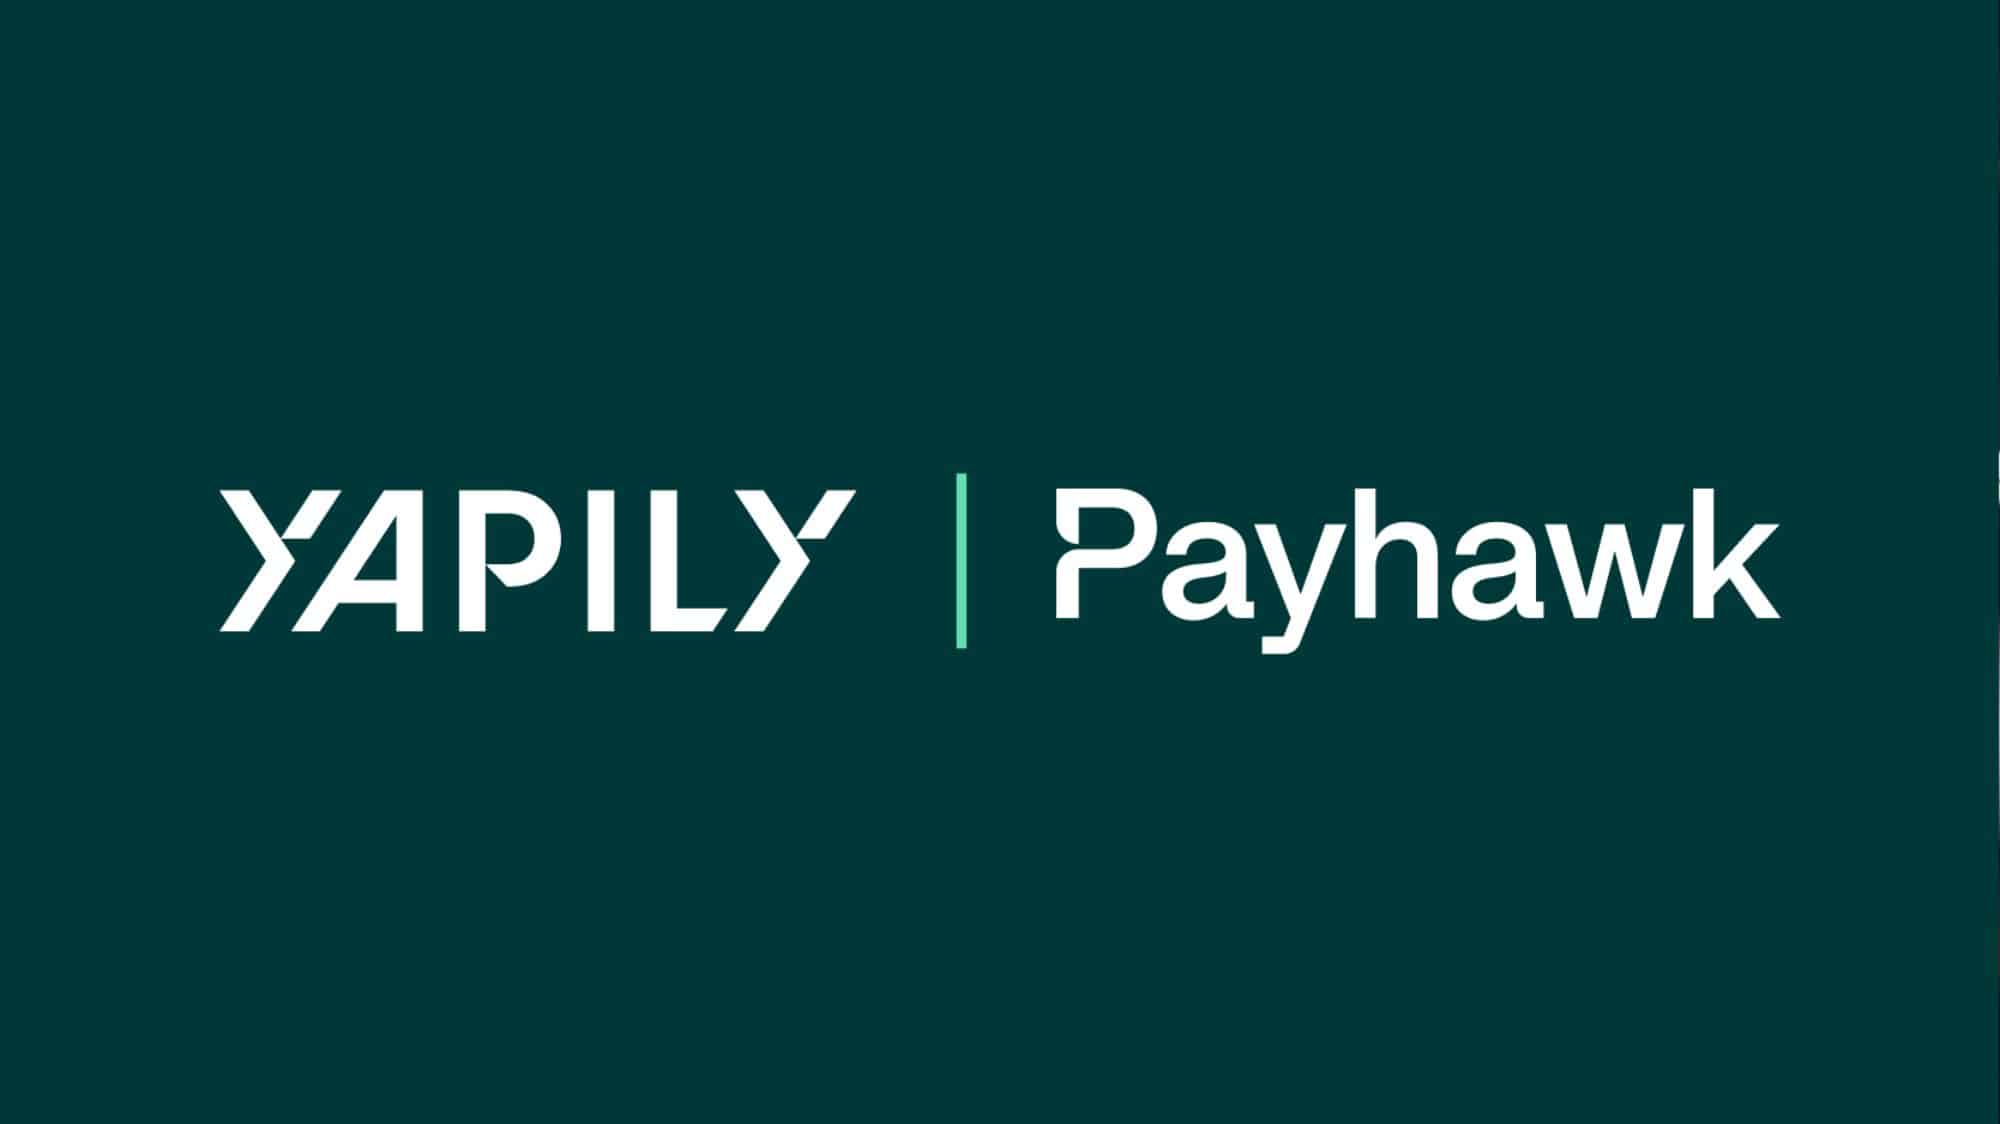 Payhawk werkt samen met Yapily om betalingen te vereenvoudigen in Europa en het VK